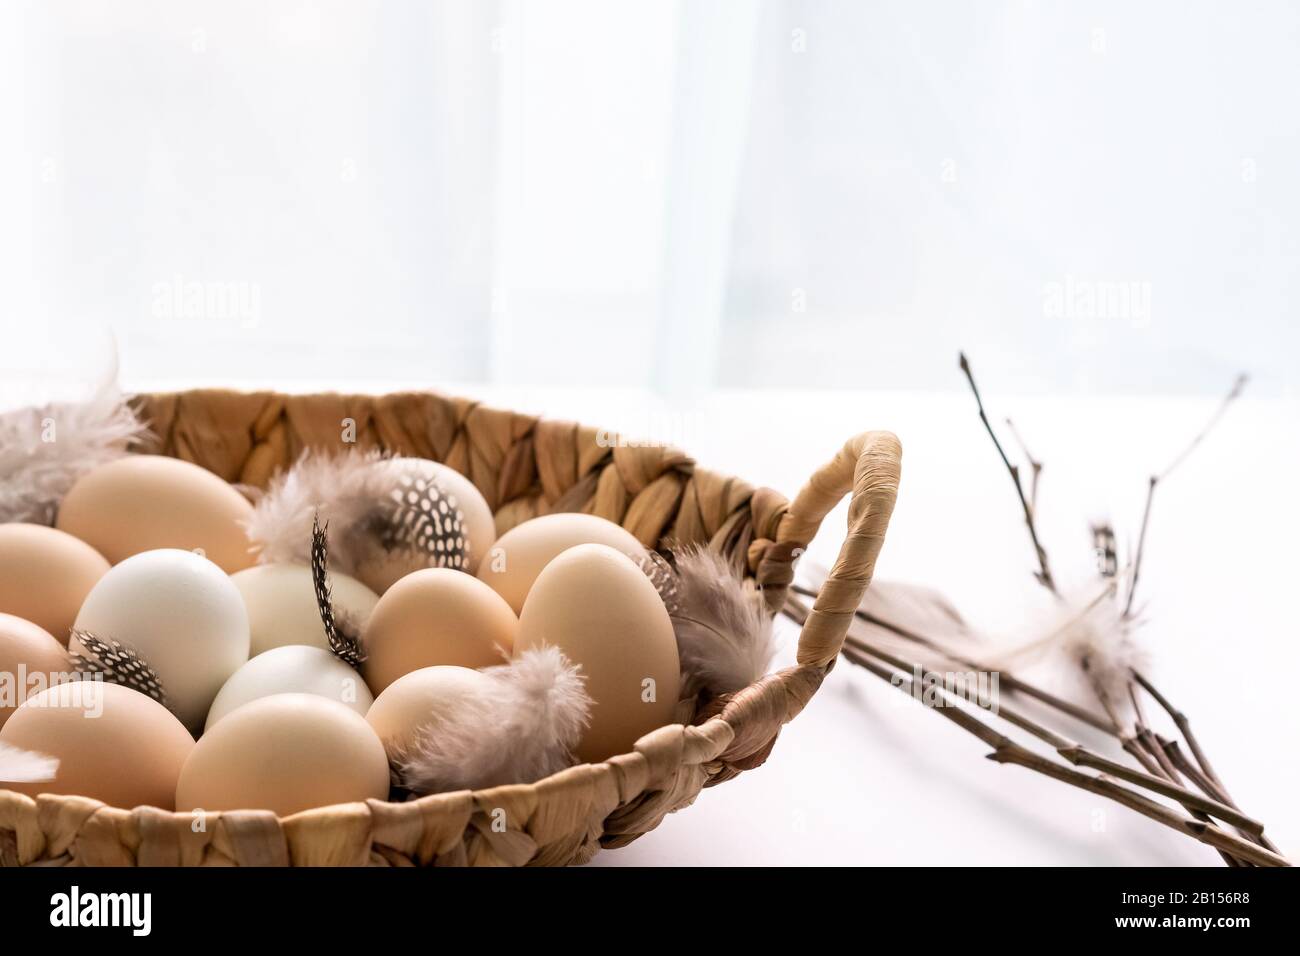 Fresco crudo fattoria biologica chiken uova in un cesto su sfondo whita. Cibo sano naturale e agricoltura biologica, concetto di pasqua. Foto Stock